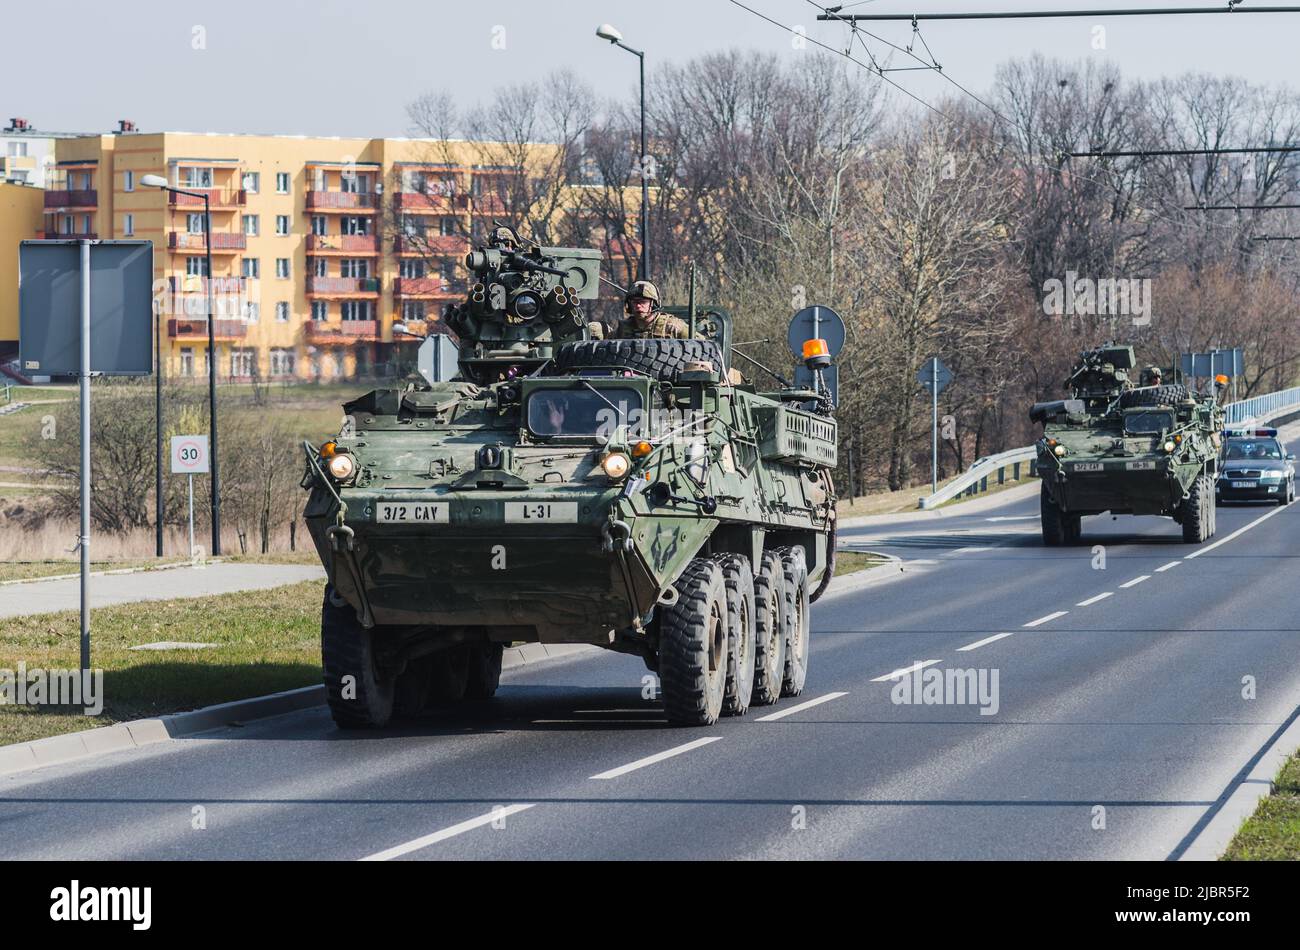 Lublin, Pologne - 25 mars 2015 : véhicule militaire des États-Unis (transporteur personnel blindé) Stryker traversant les rues de la ville Banque D'Images